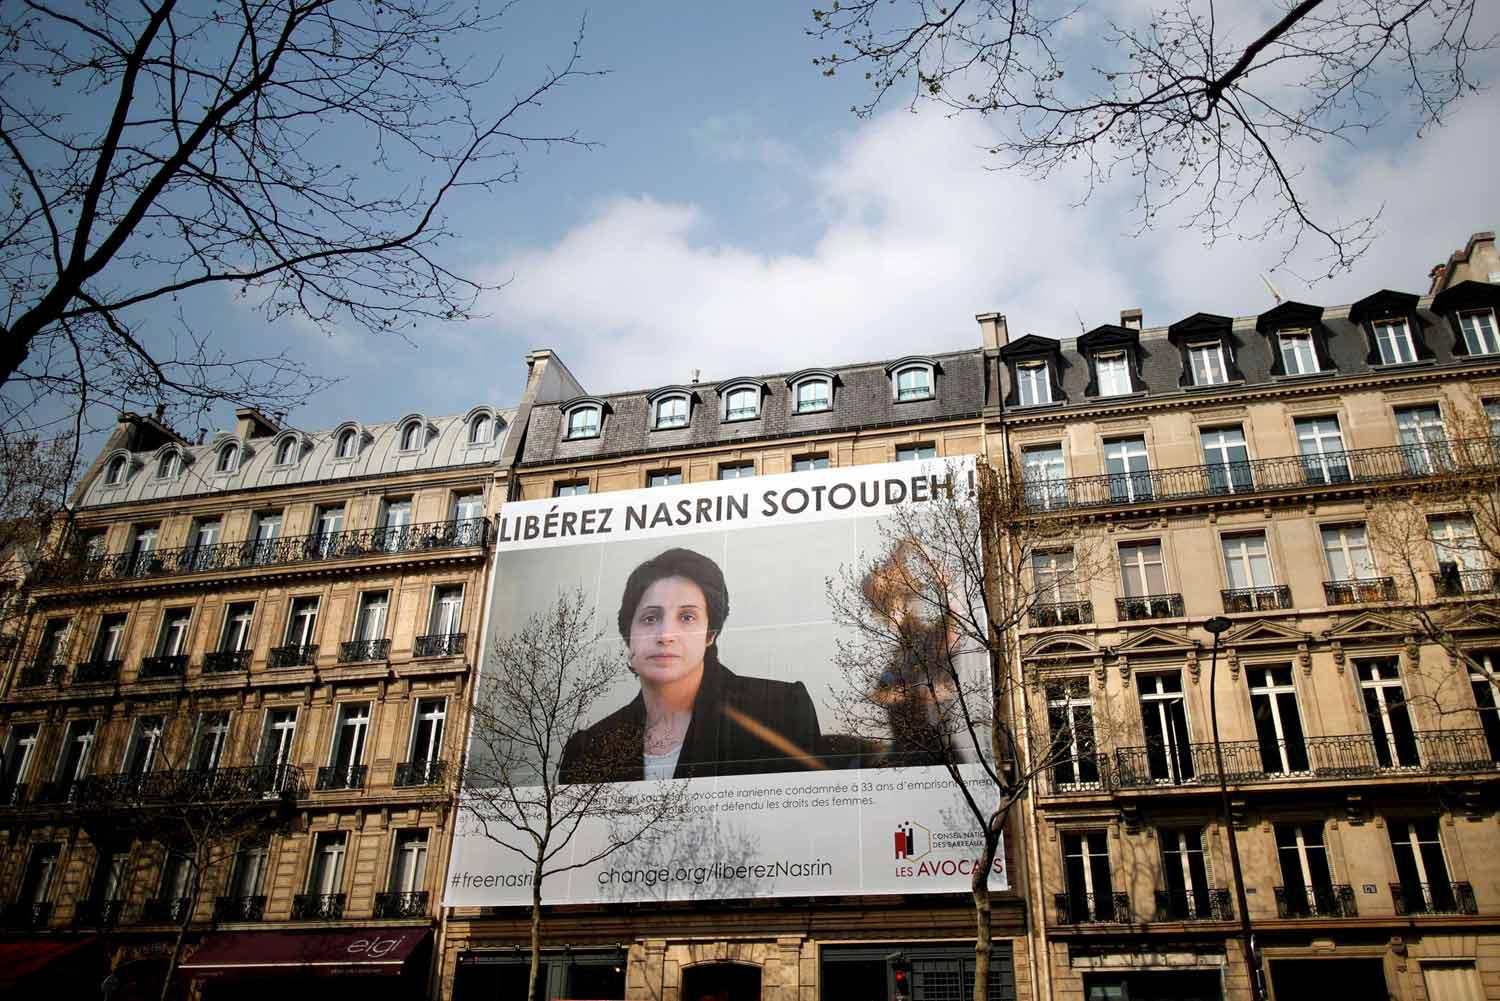 باريس منحت نسرين سوتوده القابعة في السجون الإيرانية صفة مواطنة شرف 